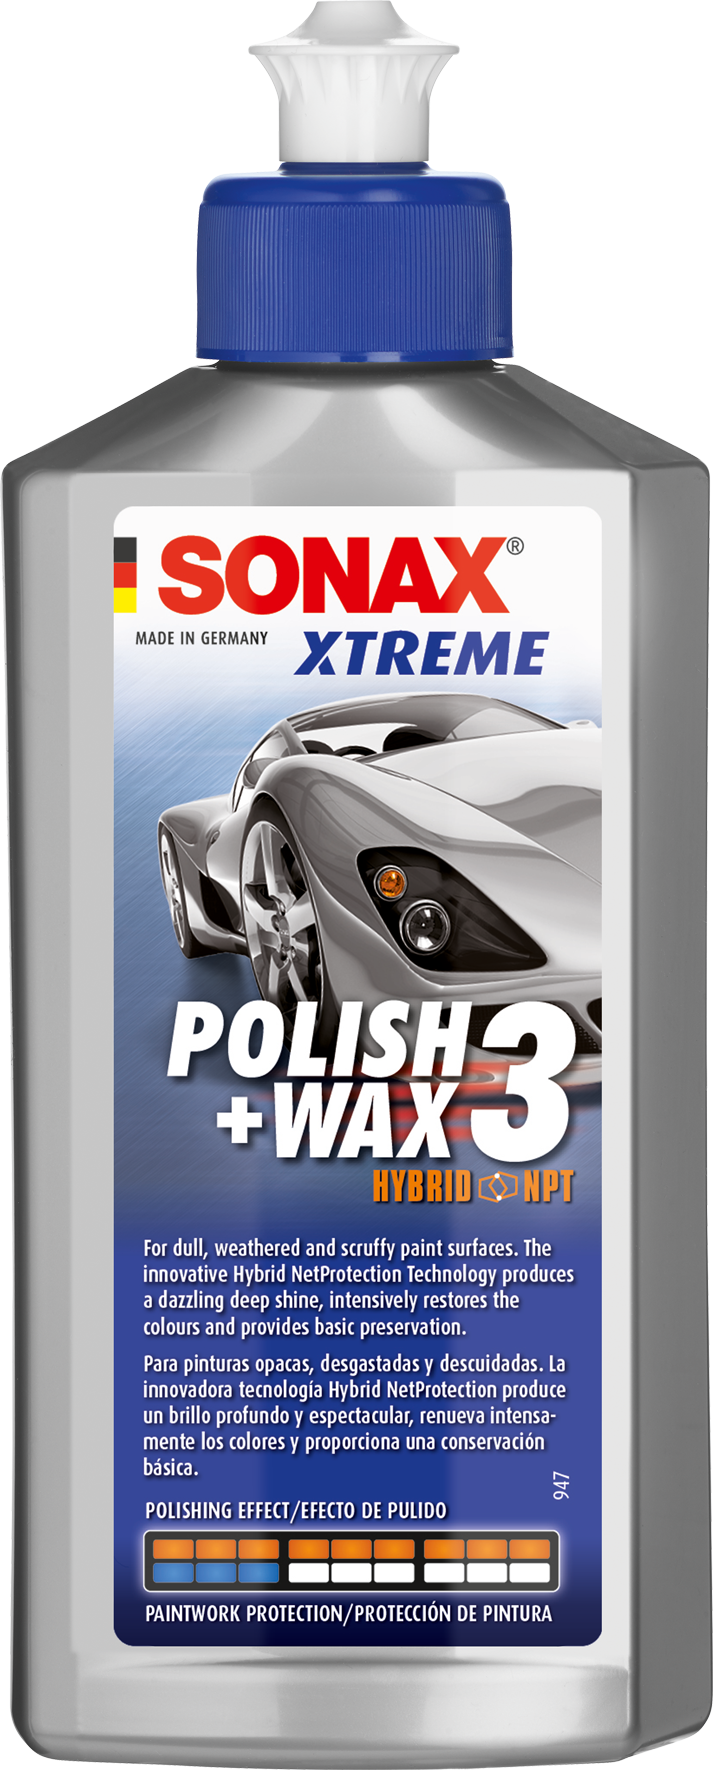 https://es-packshots.sonaxmedia.com/es/packshots/02021000-xtreme-polish-wax-3-hybrid-npt-e01-en-es-2021-12-09.png